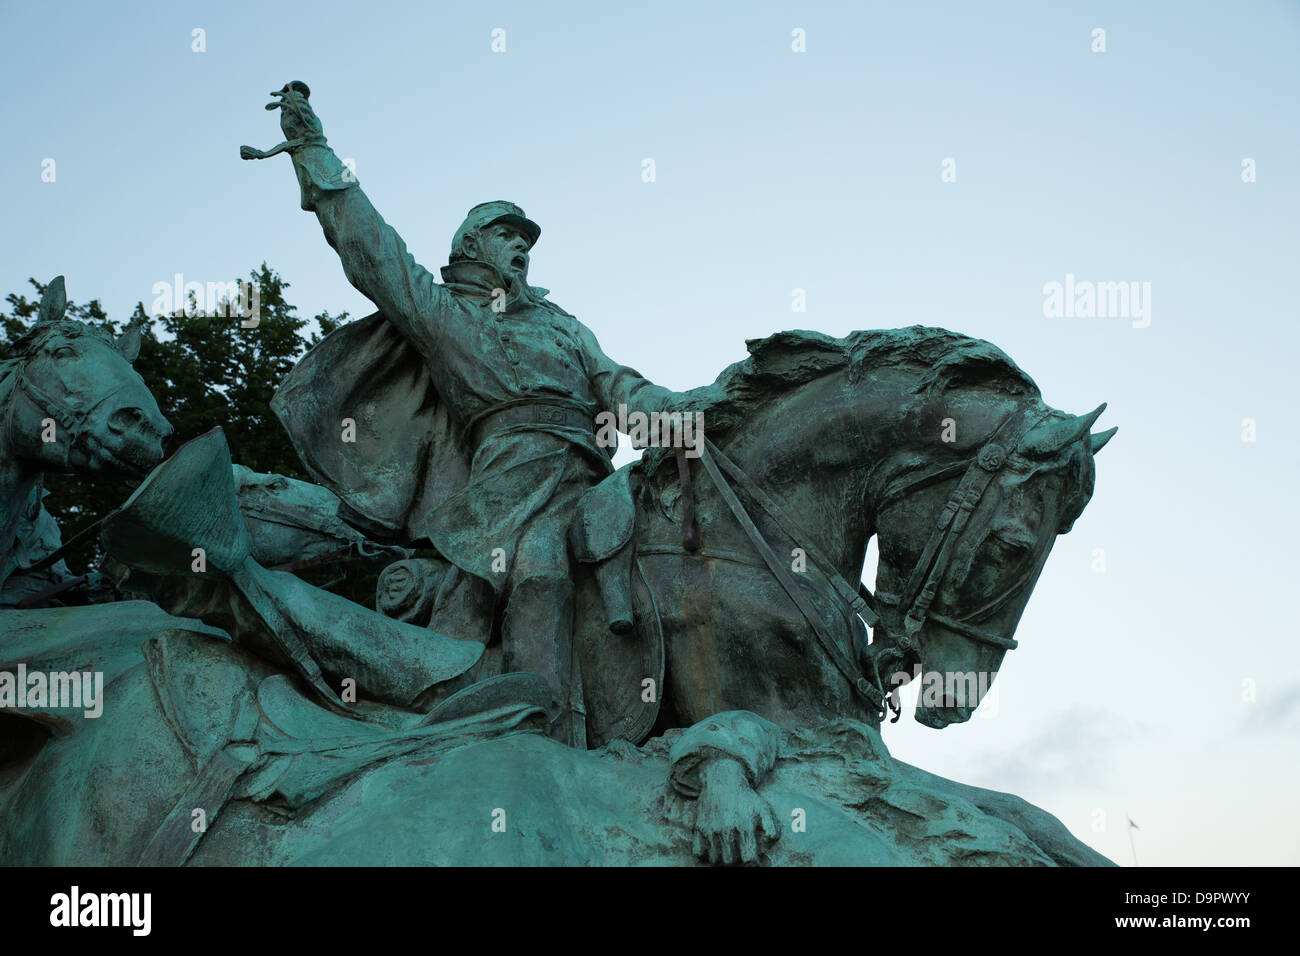 Ulysses S Grant Memorial, Washington, DC, EE.UU. Foto de stock